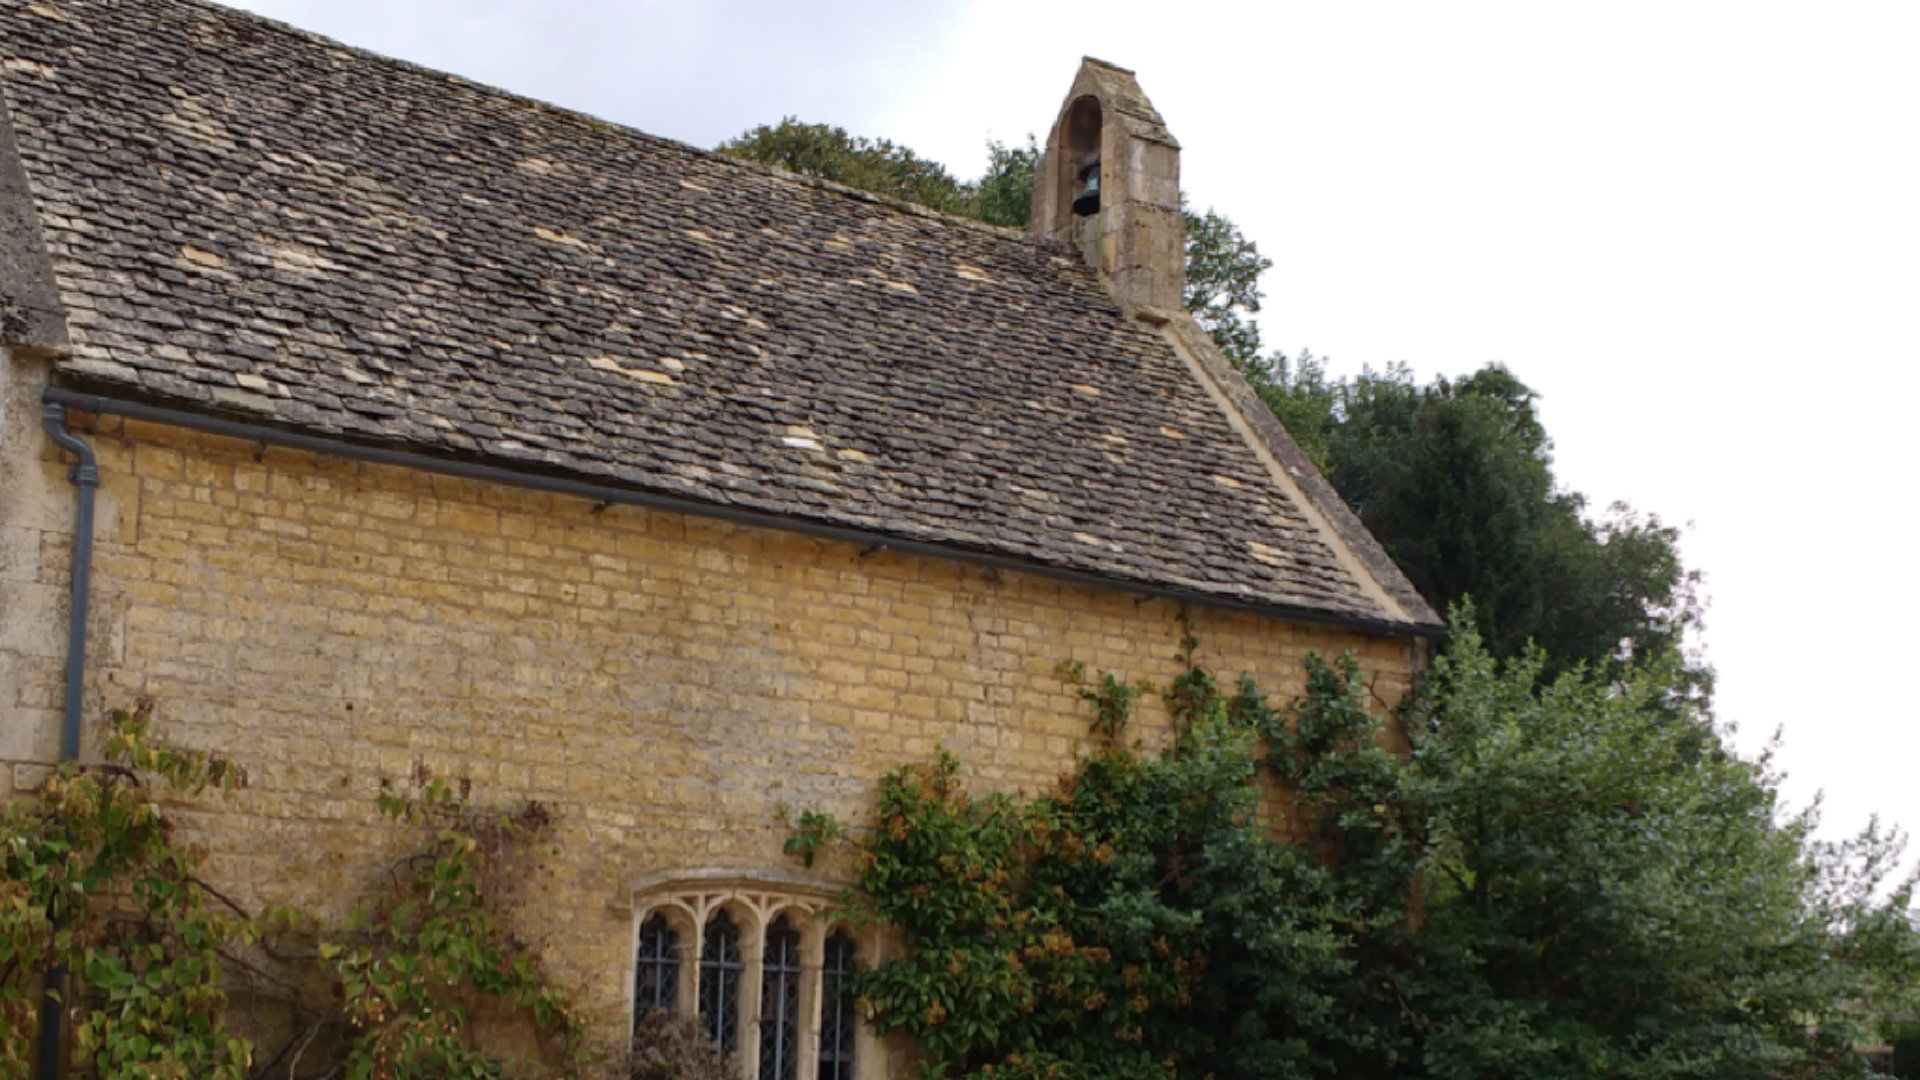 Hidcote Chapel